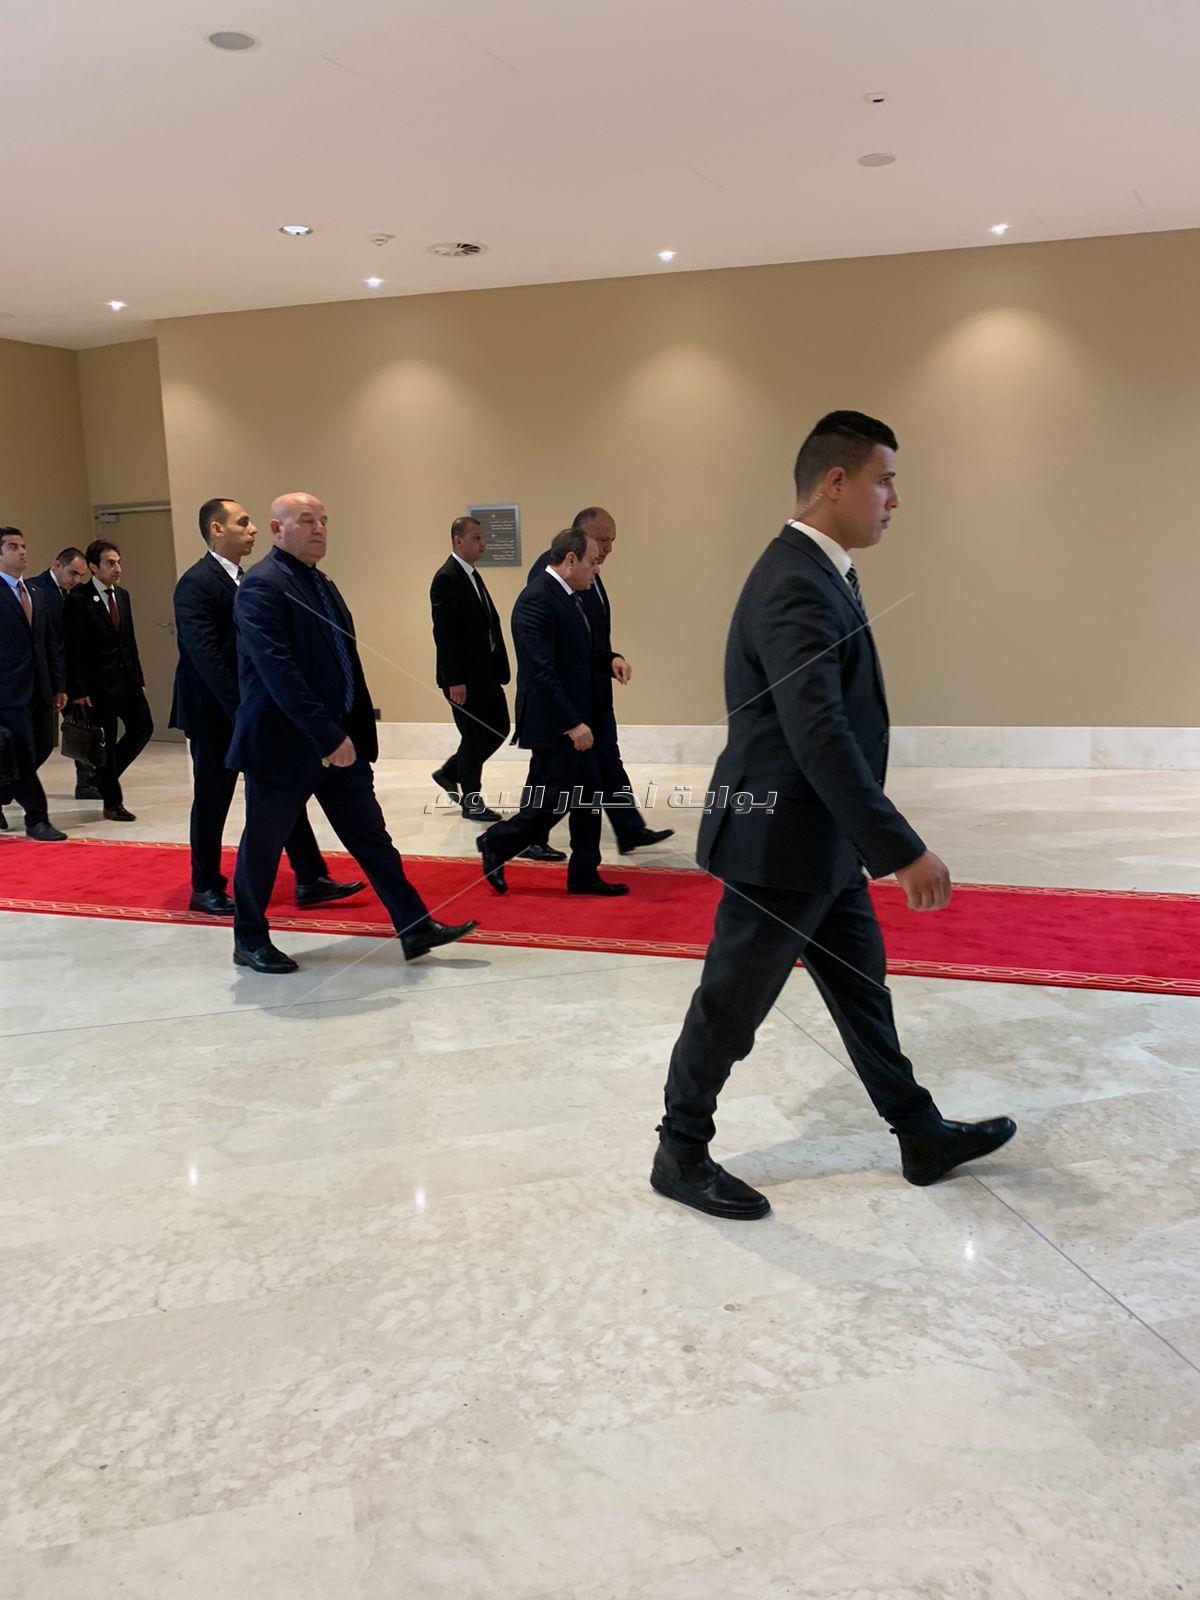 الرئيس السيسي يصل مقر القمة العربية للمشاركة بفاعليات اليوم الثاني